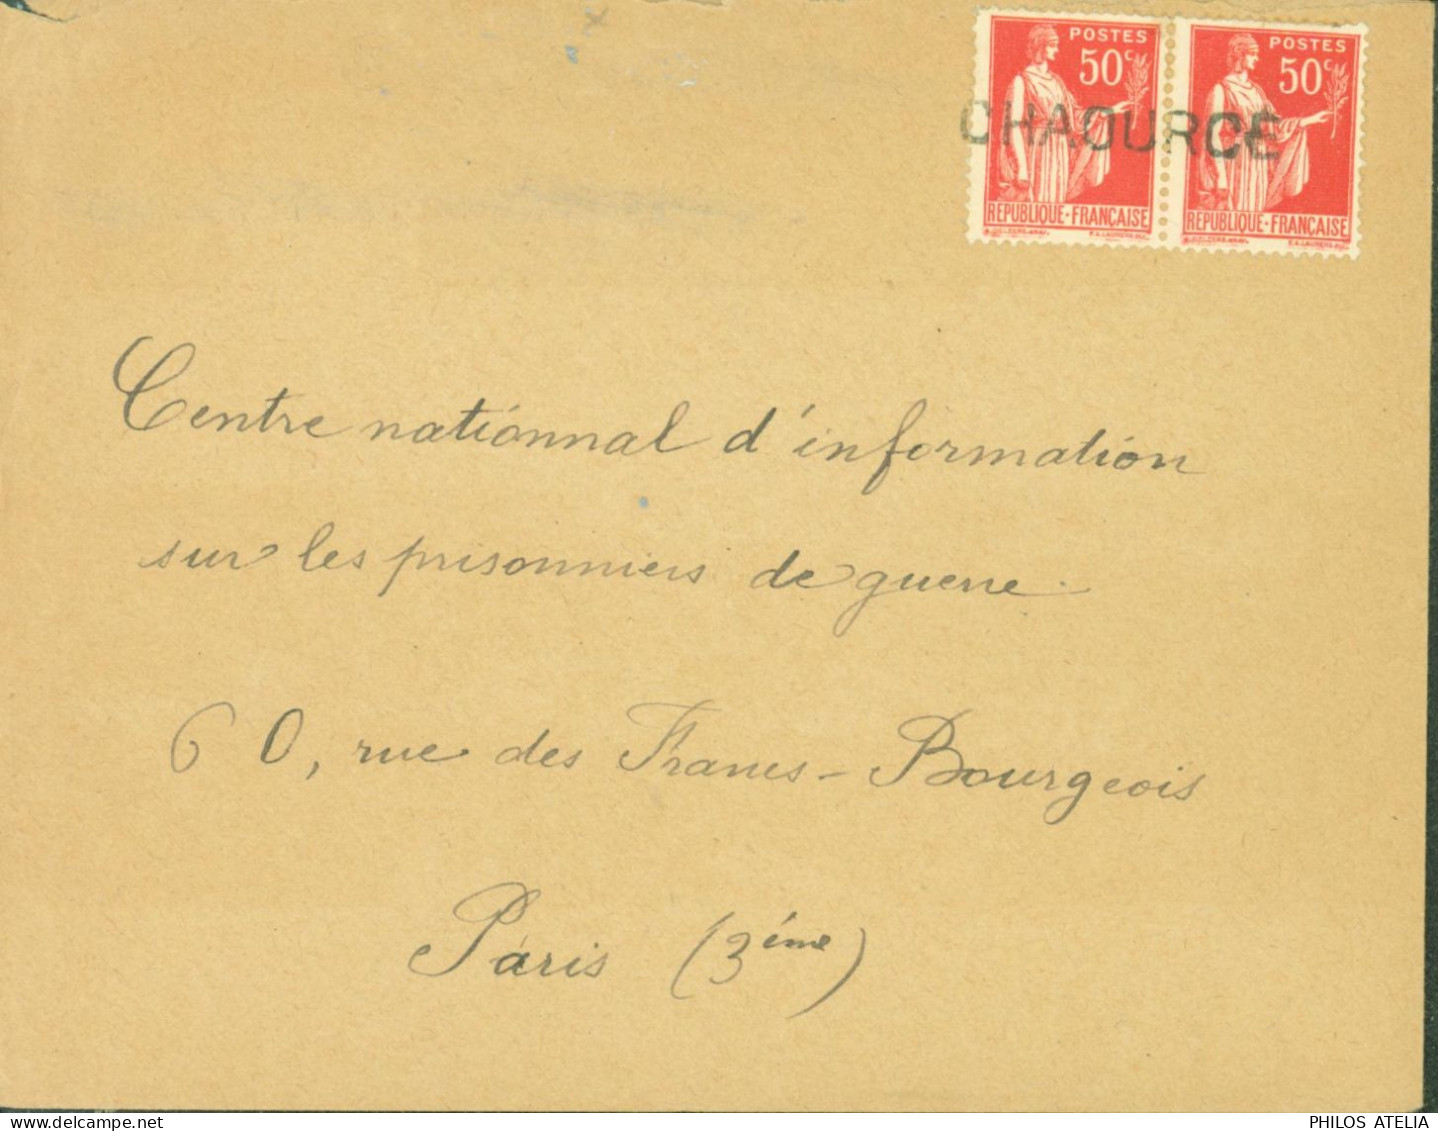 Guerre 40 Débâcle Oblitération De Fortune Provisoire CHAOURCE (Aube) Pour Centre Information Prisonniers Paris - 2. Weltkrieg 1939-1945